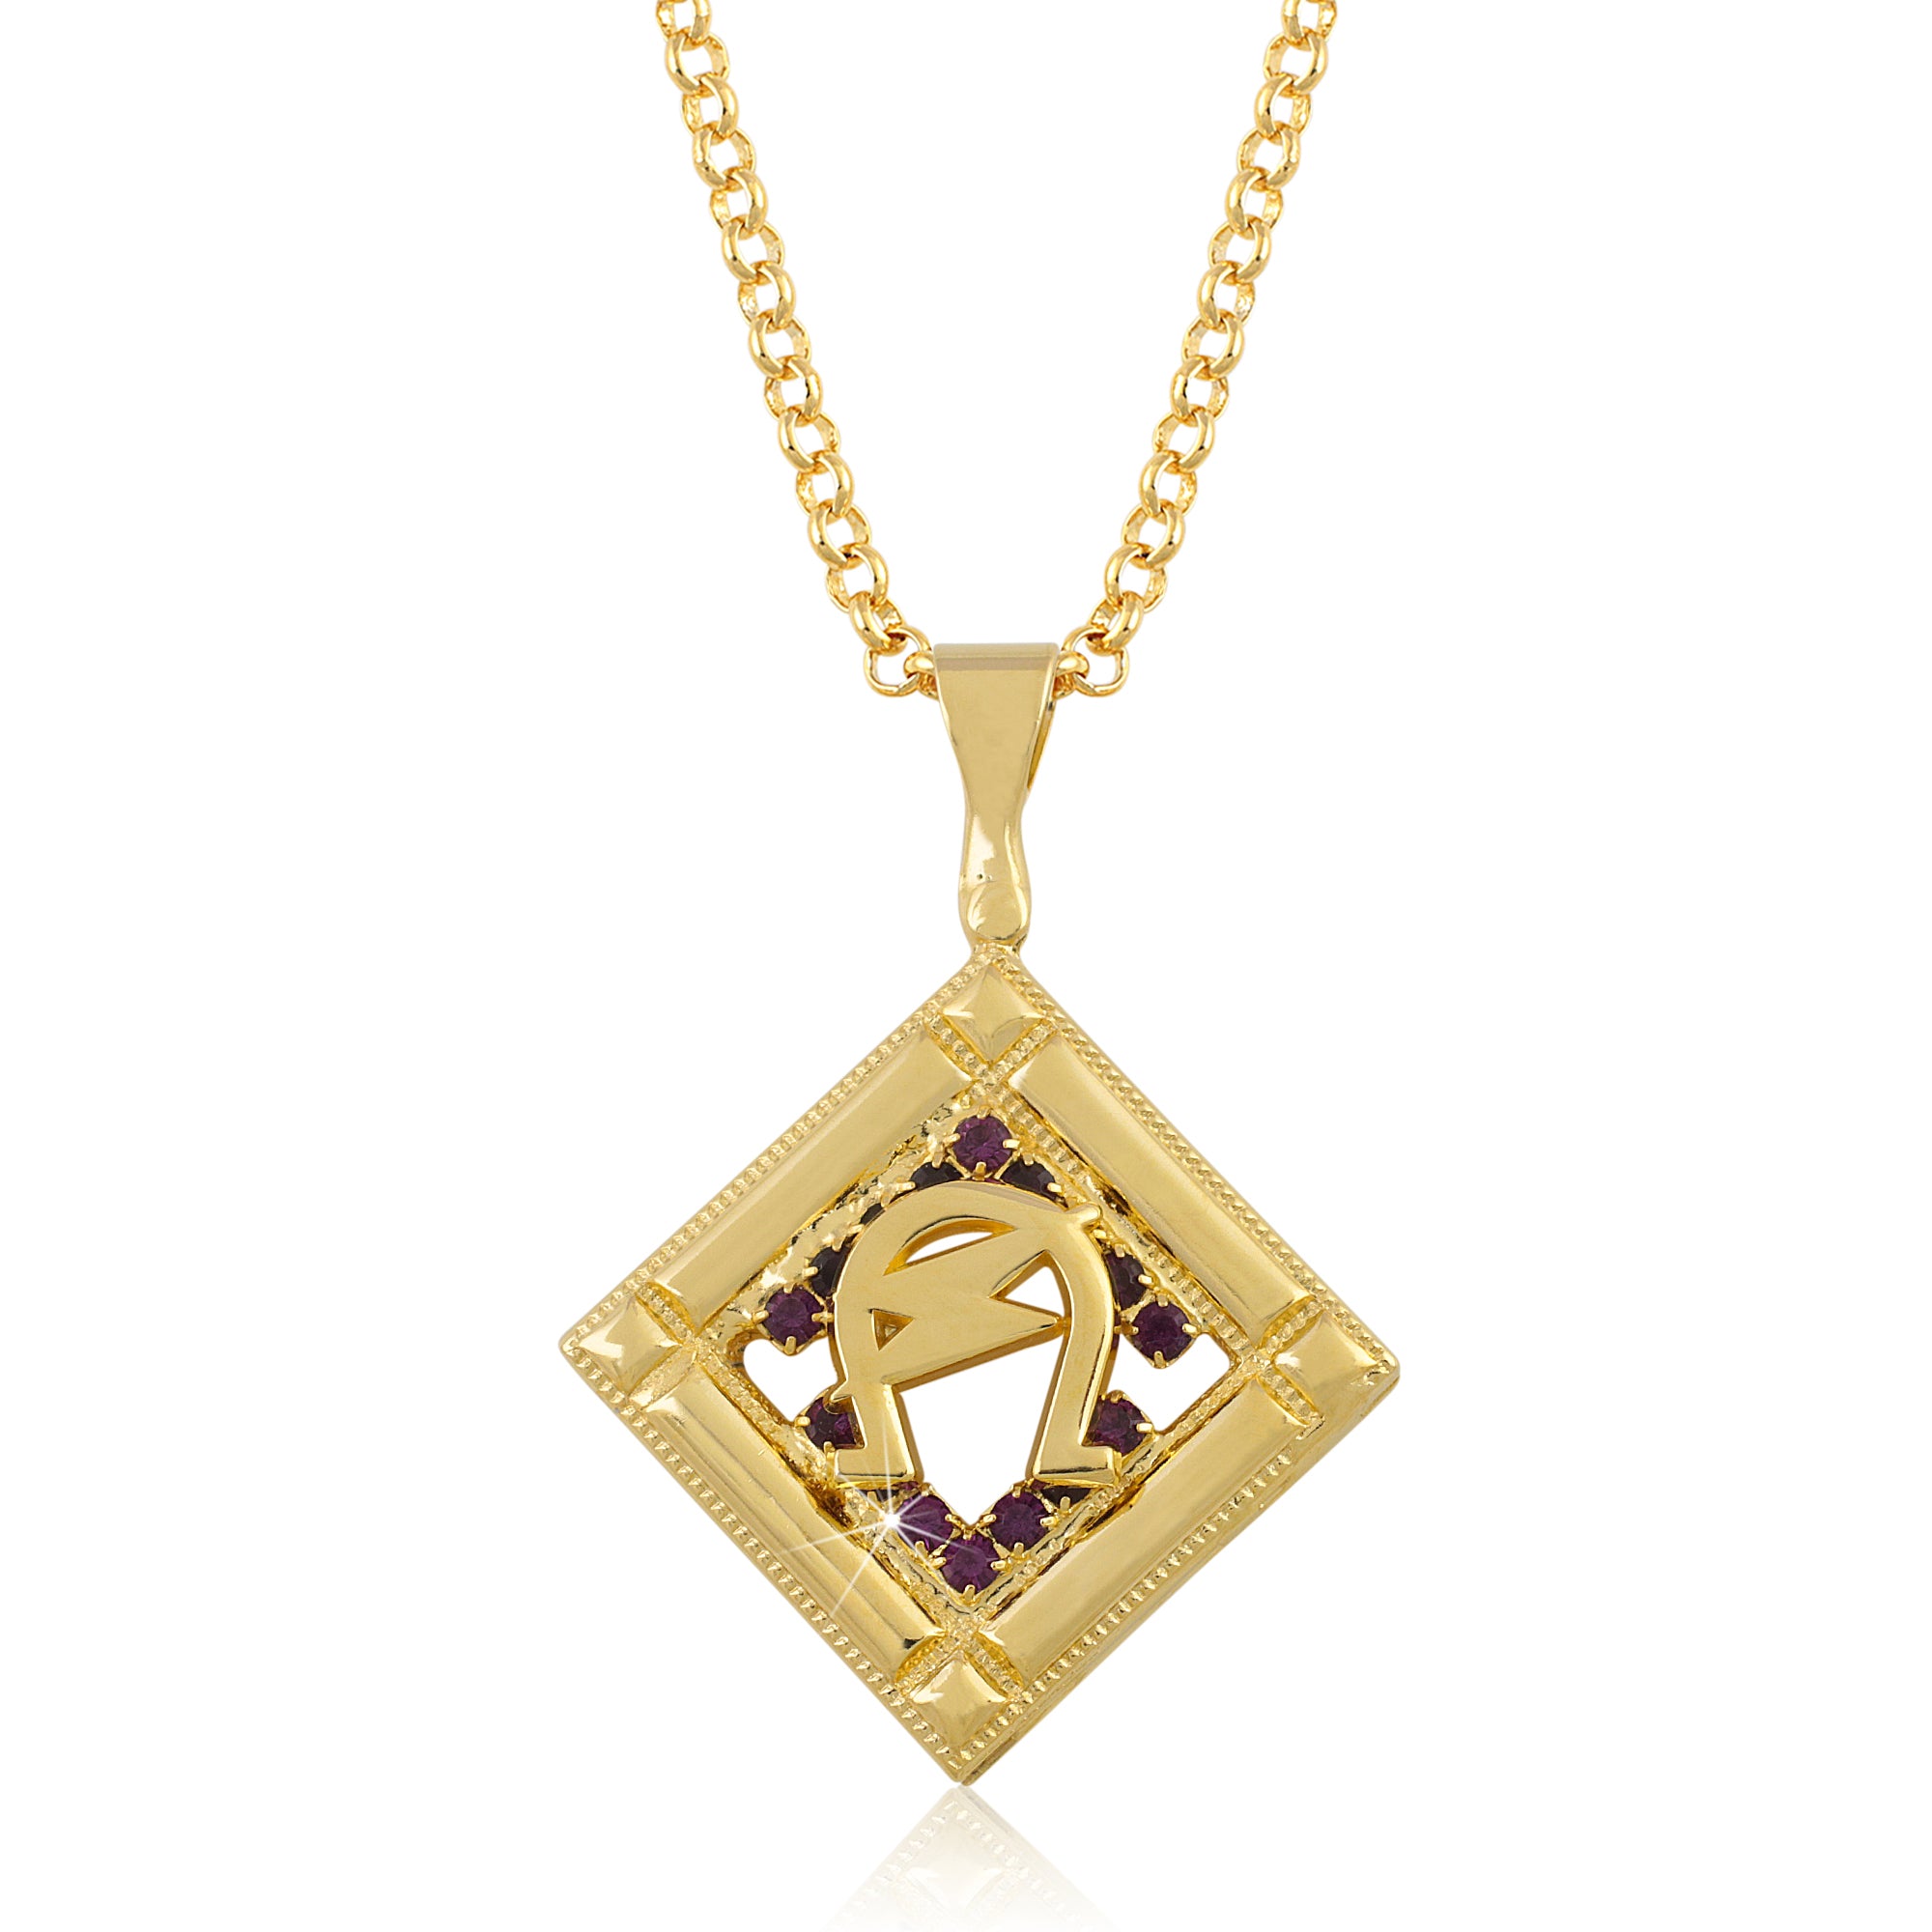 omega psi phi gold pendant